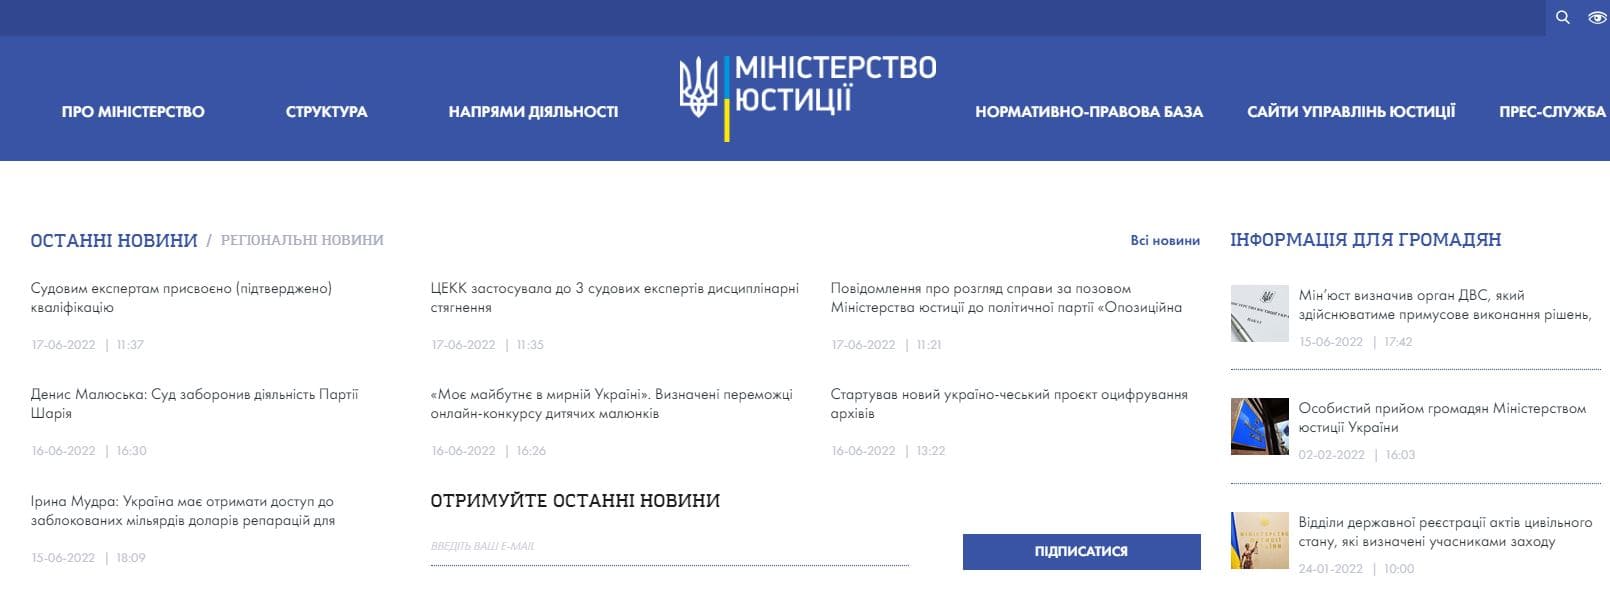 Министерство юстиции Украины (minjust.gov.ua) – электронное обращение, официальный сайт